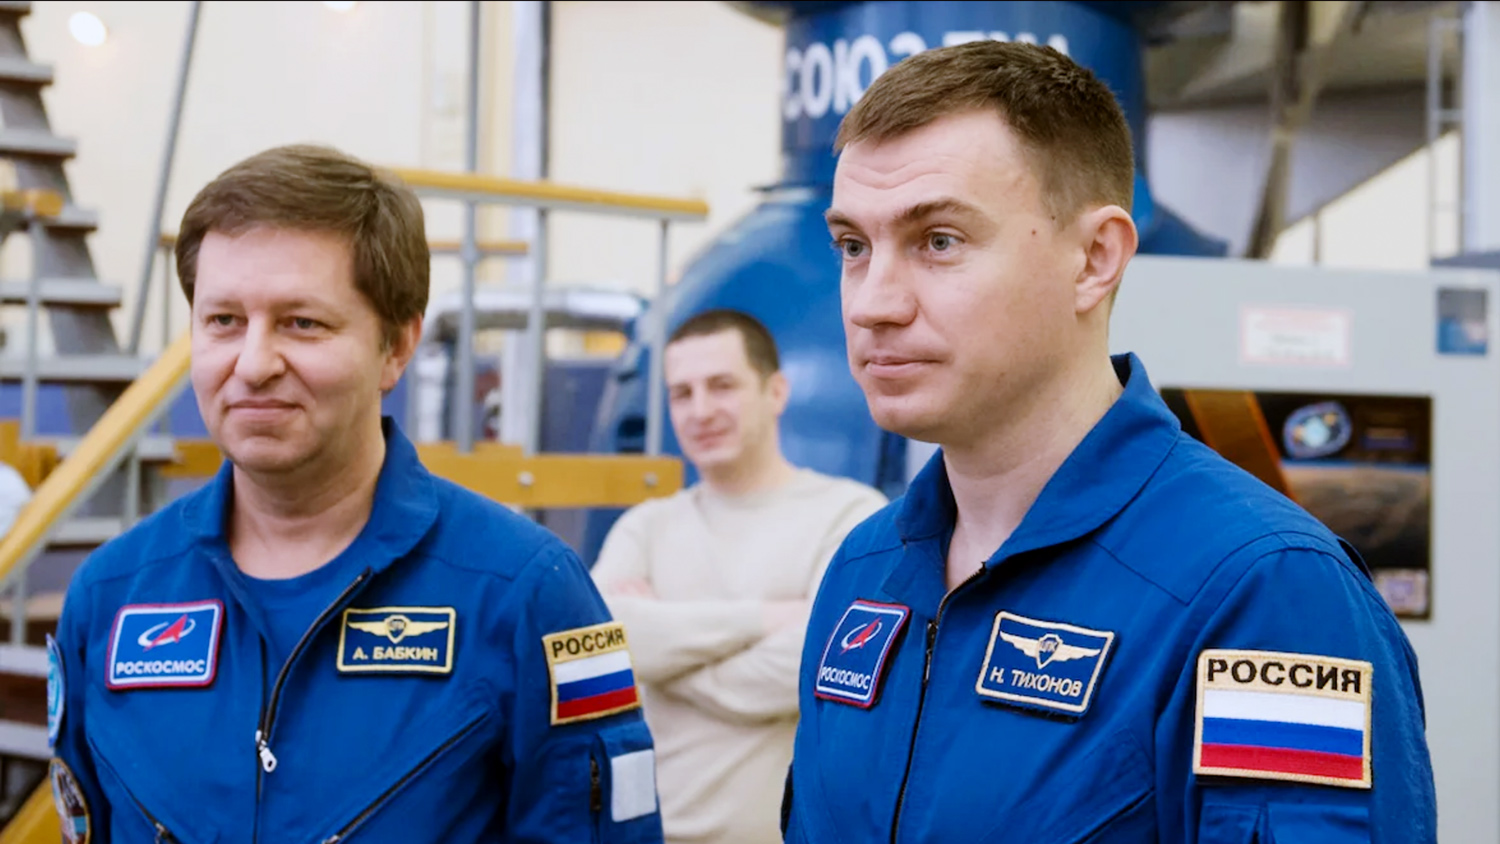 Самый возрастной командир экипажа мкс. Встреча с космонавтом Калуга 2019.